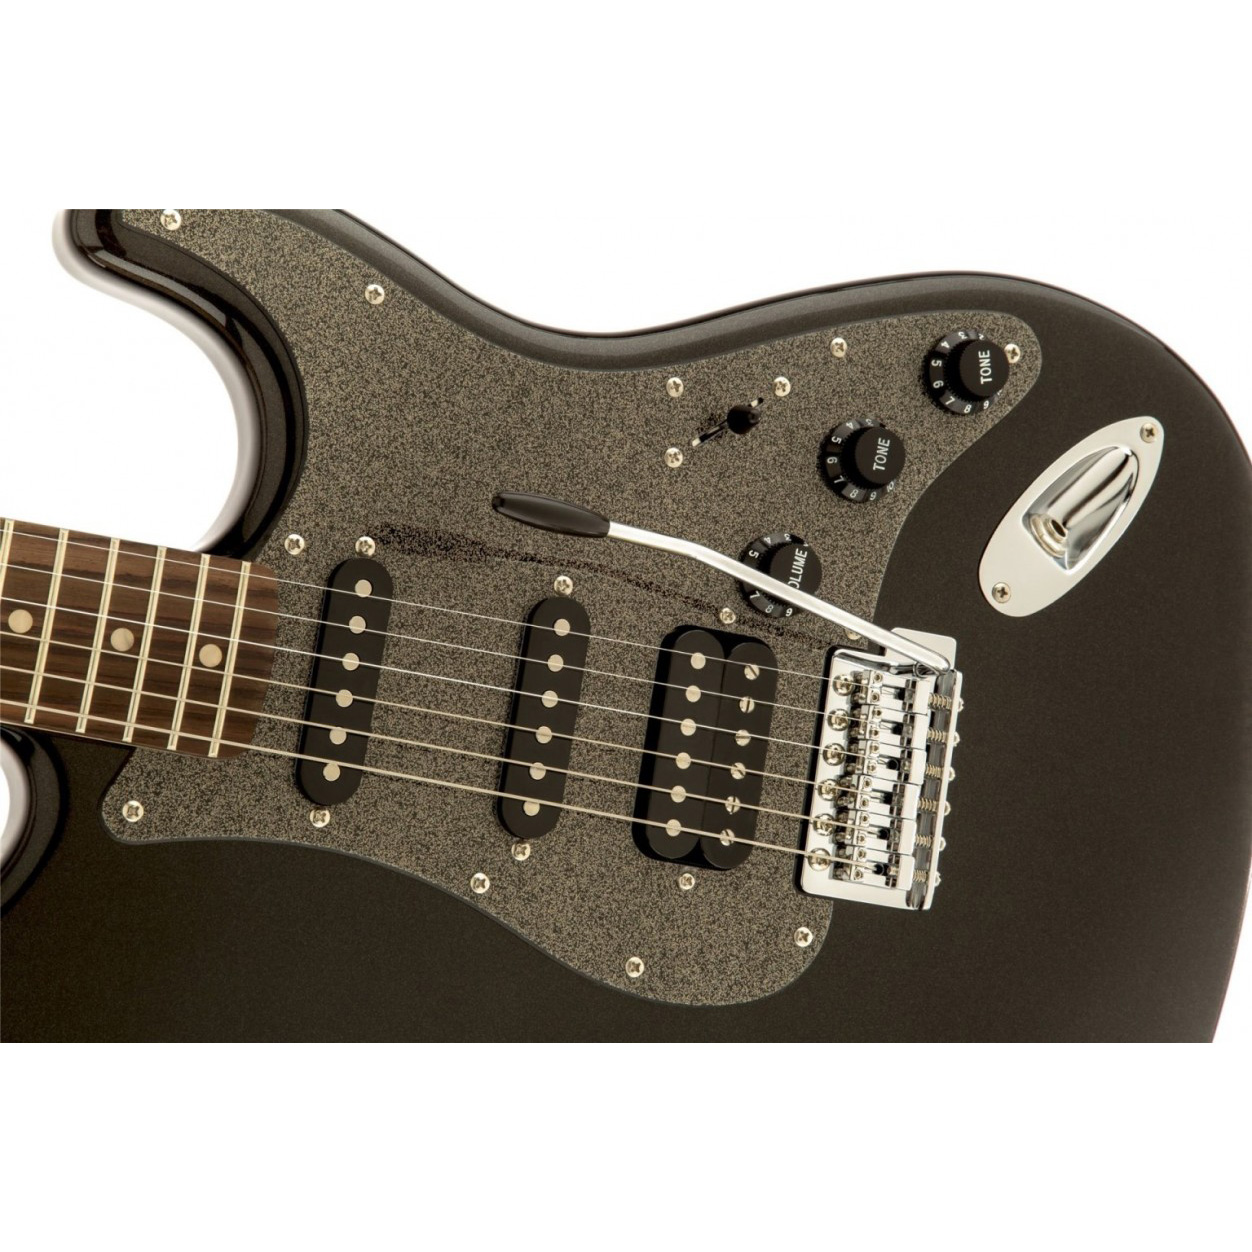 Fender Squier Affinity Stratocaster HSS LRL Montego Black Metallic Электрогитары